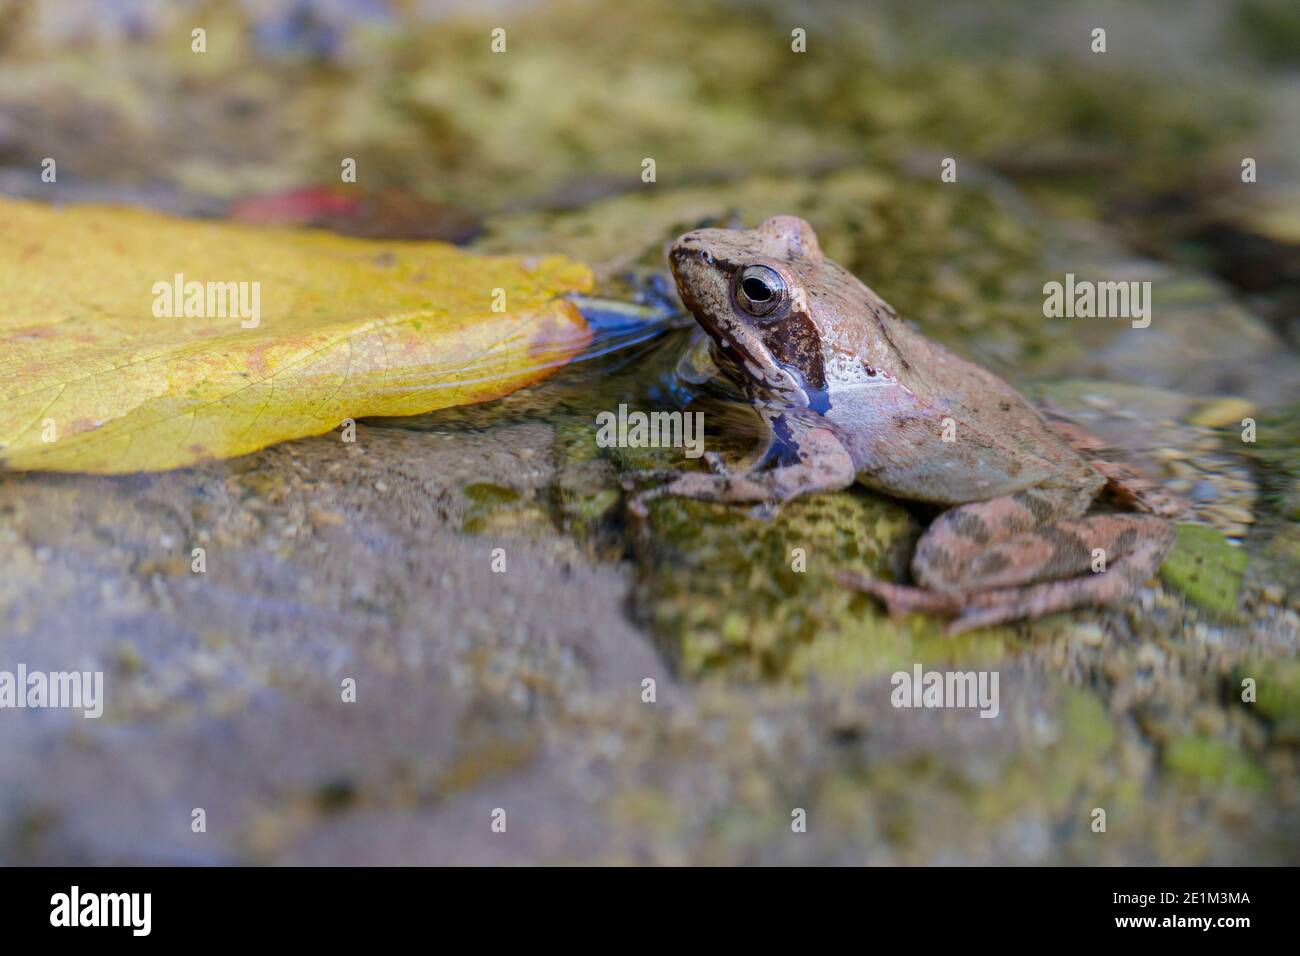 Italian Stream Frog (Rana italica), vue latérale d'un adulte dans l'eau, Campanie, Italie Banque D'Images